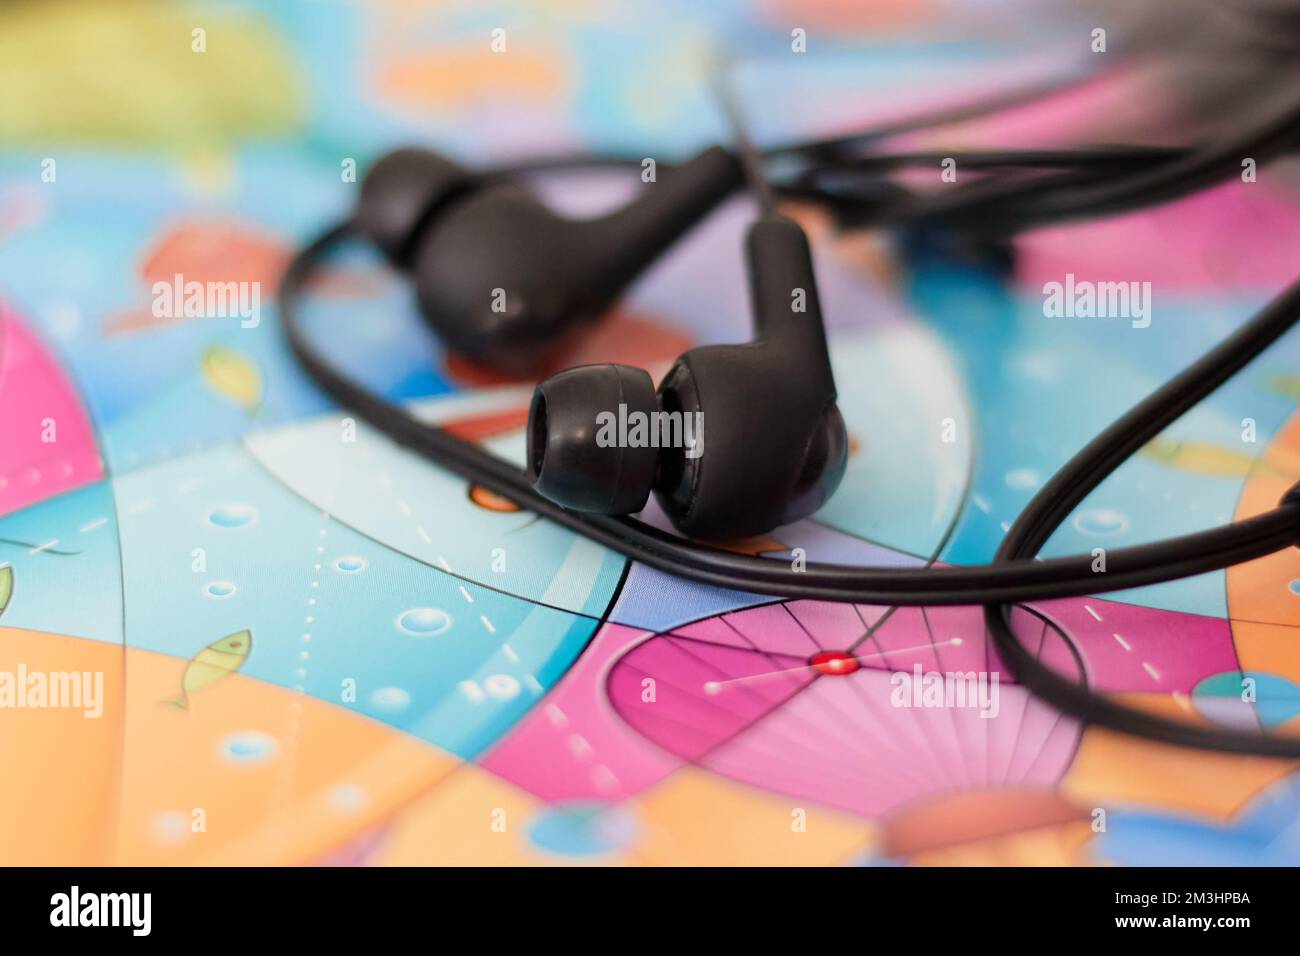 Schwarze kabelgebundene Ohrhörer, die auf einem farbigen Papaer liegen Stockfoto